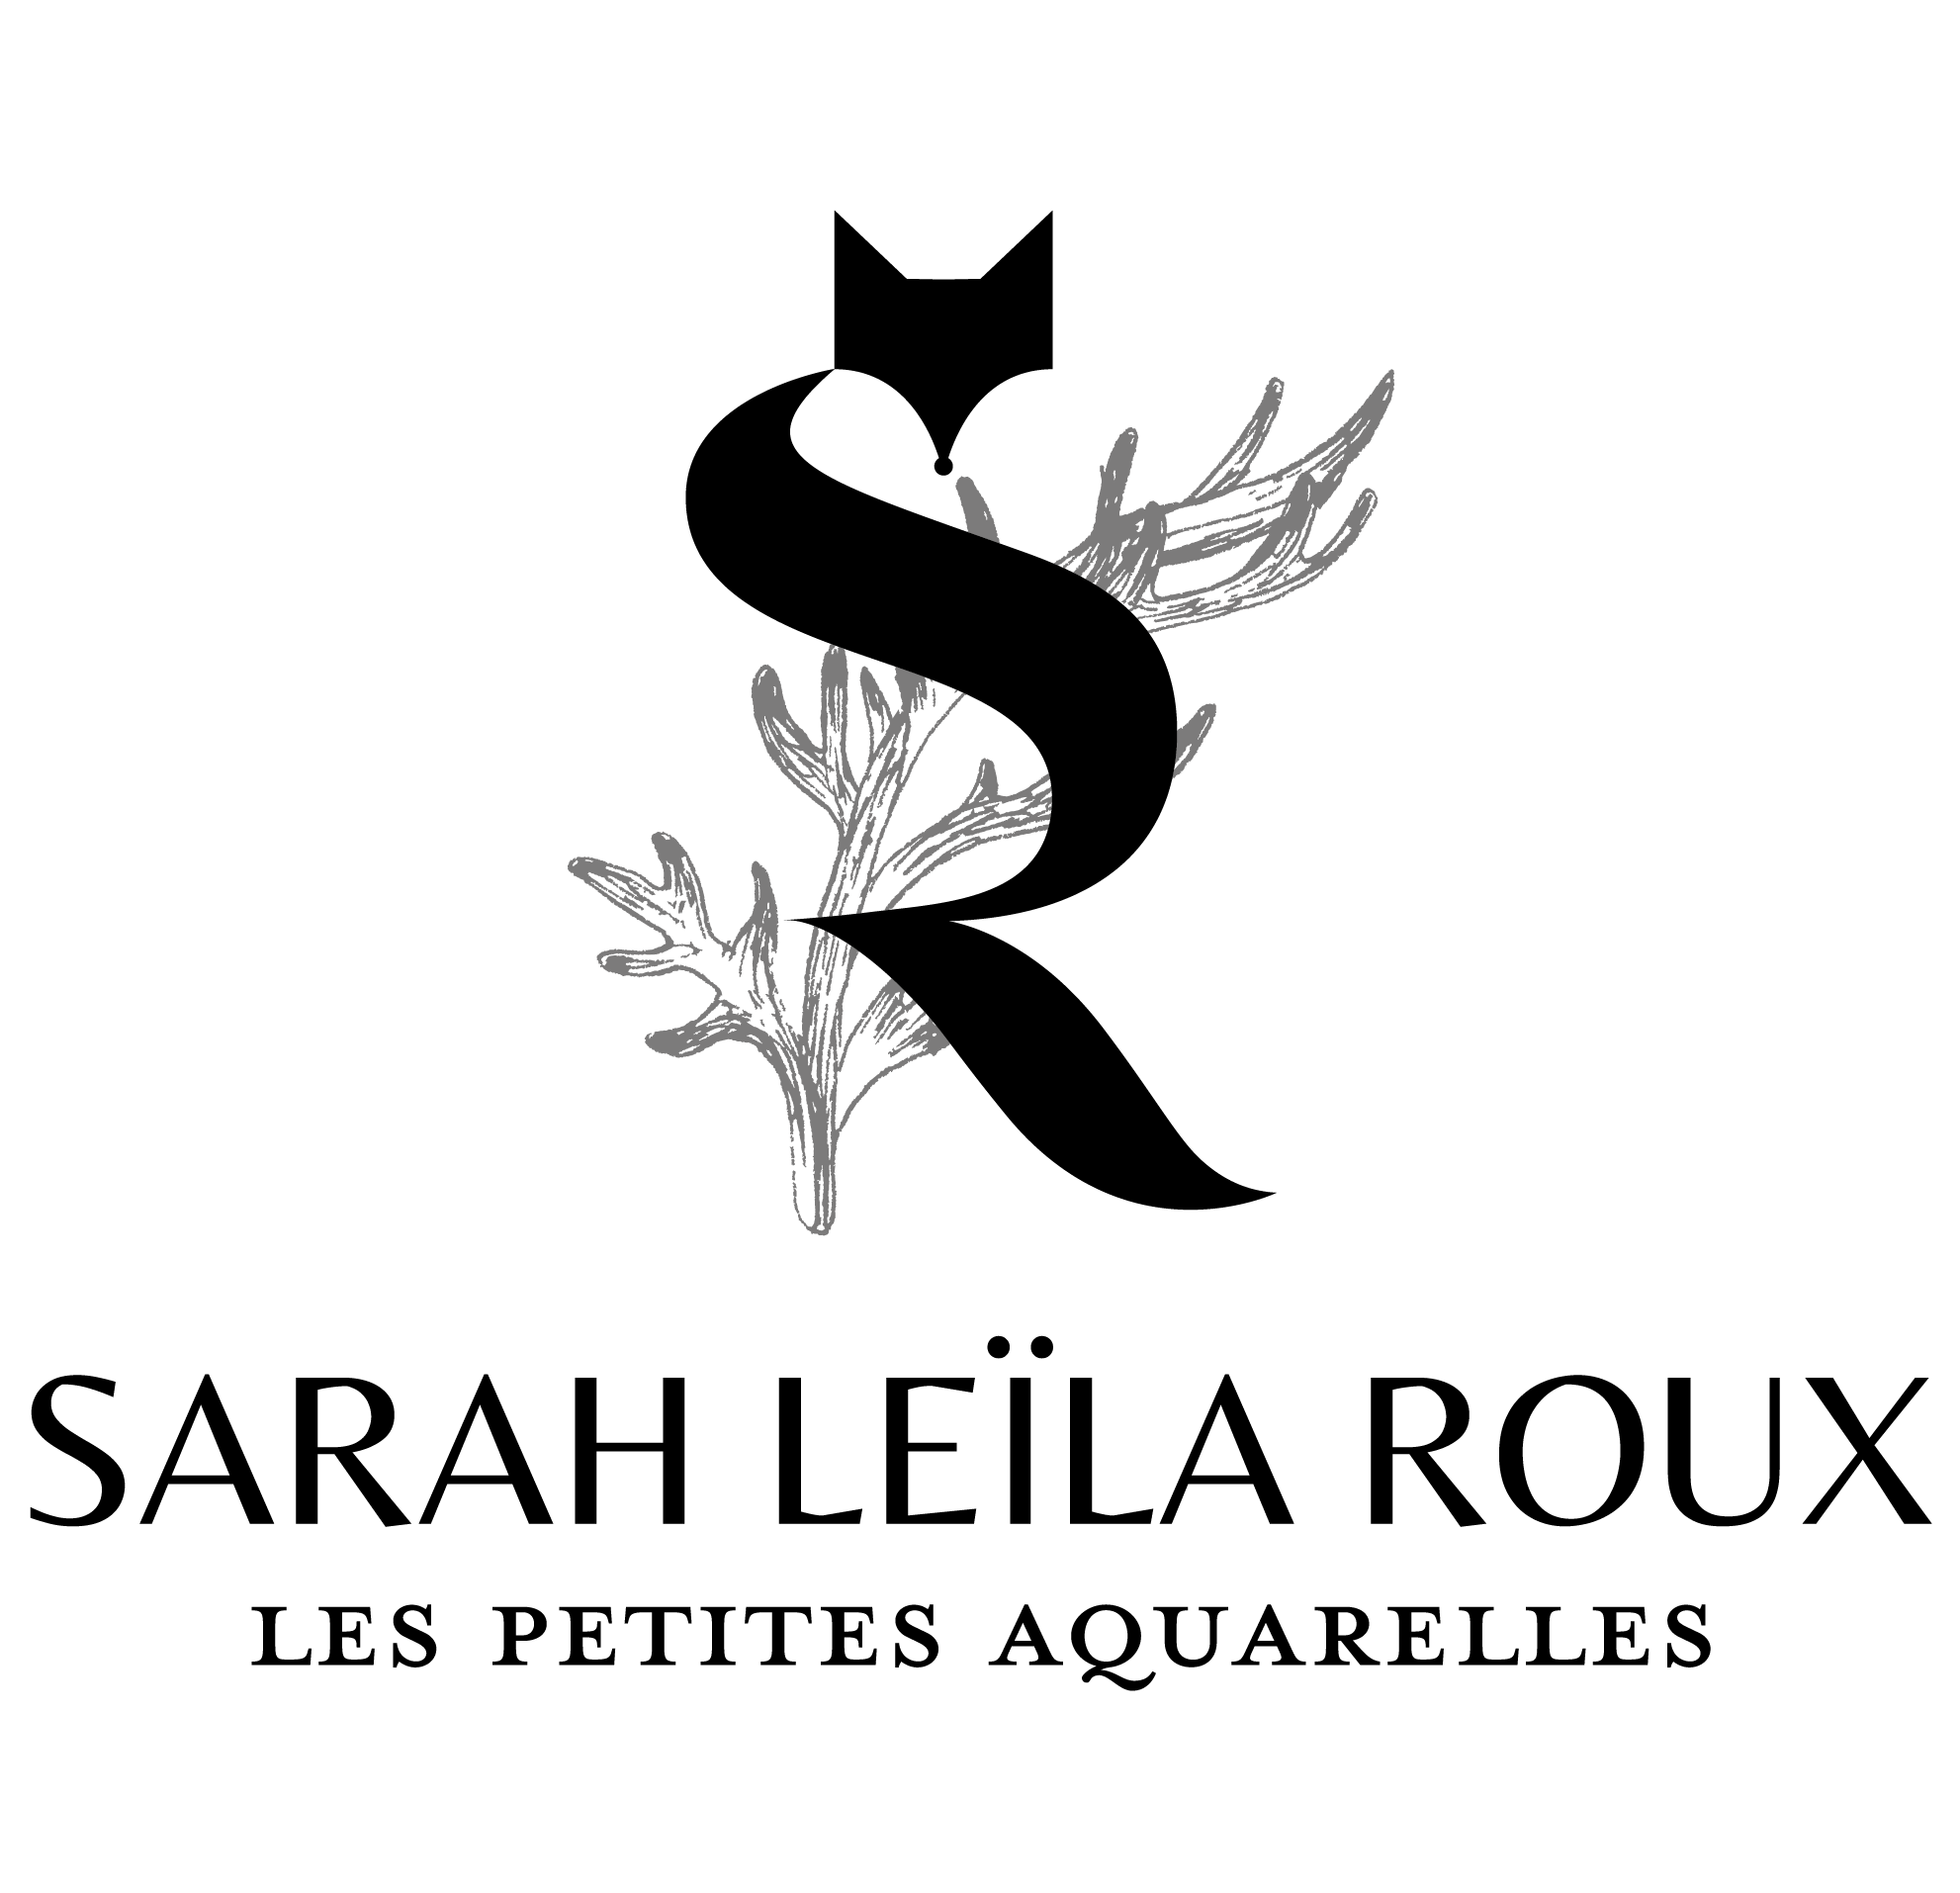 Sarah ROUX